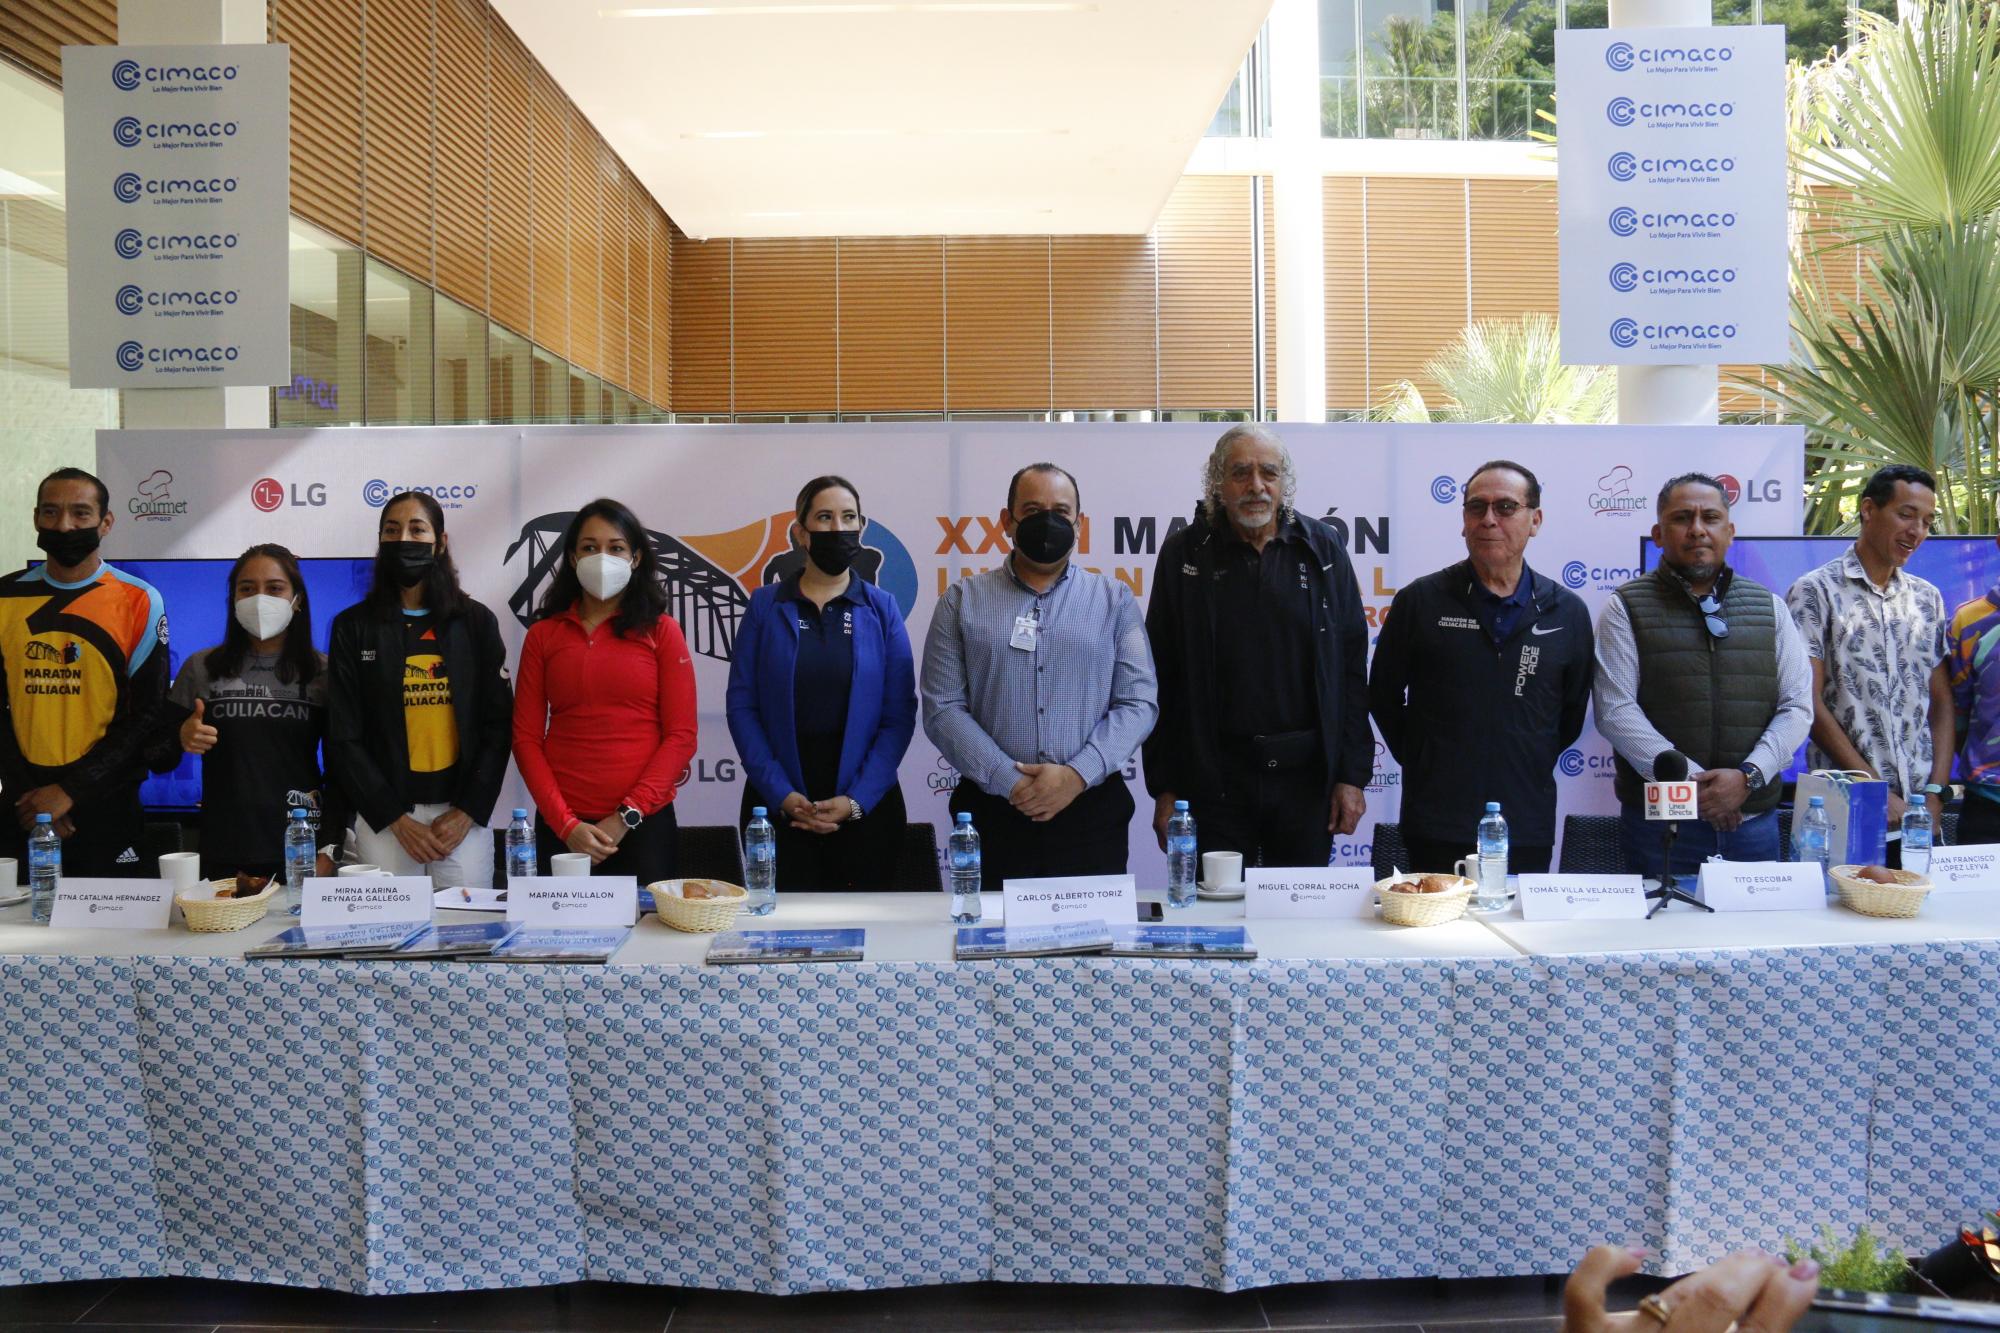 $!Conferencia de prensa en Cimaco Culiacán para anunciar el Maratón de Culiacán.